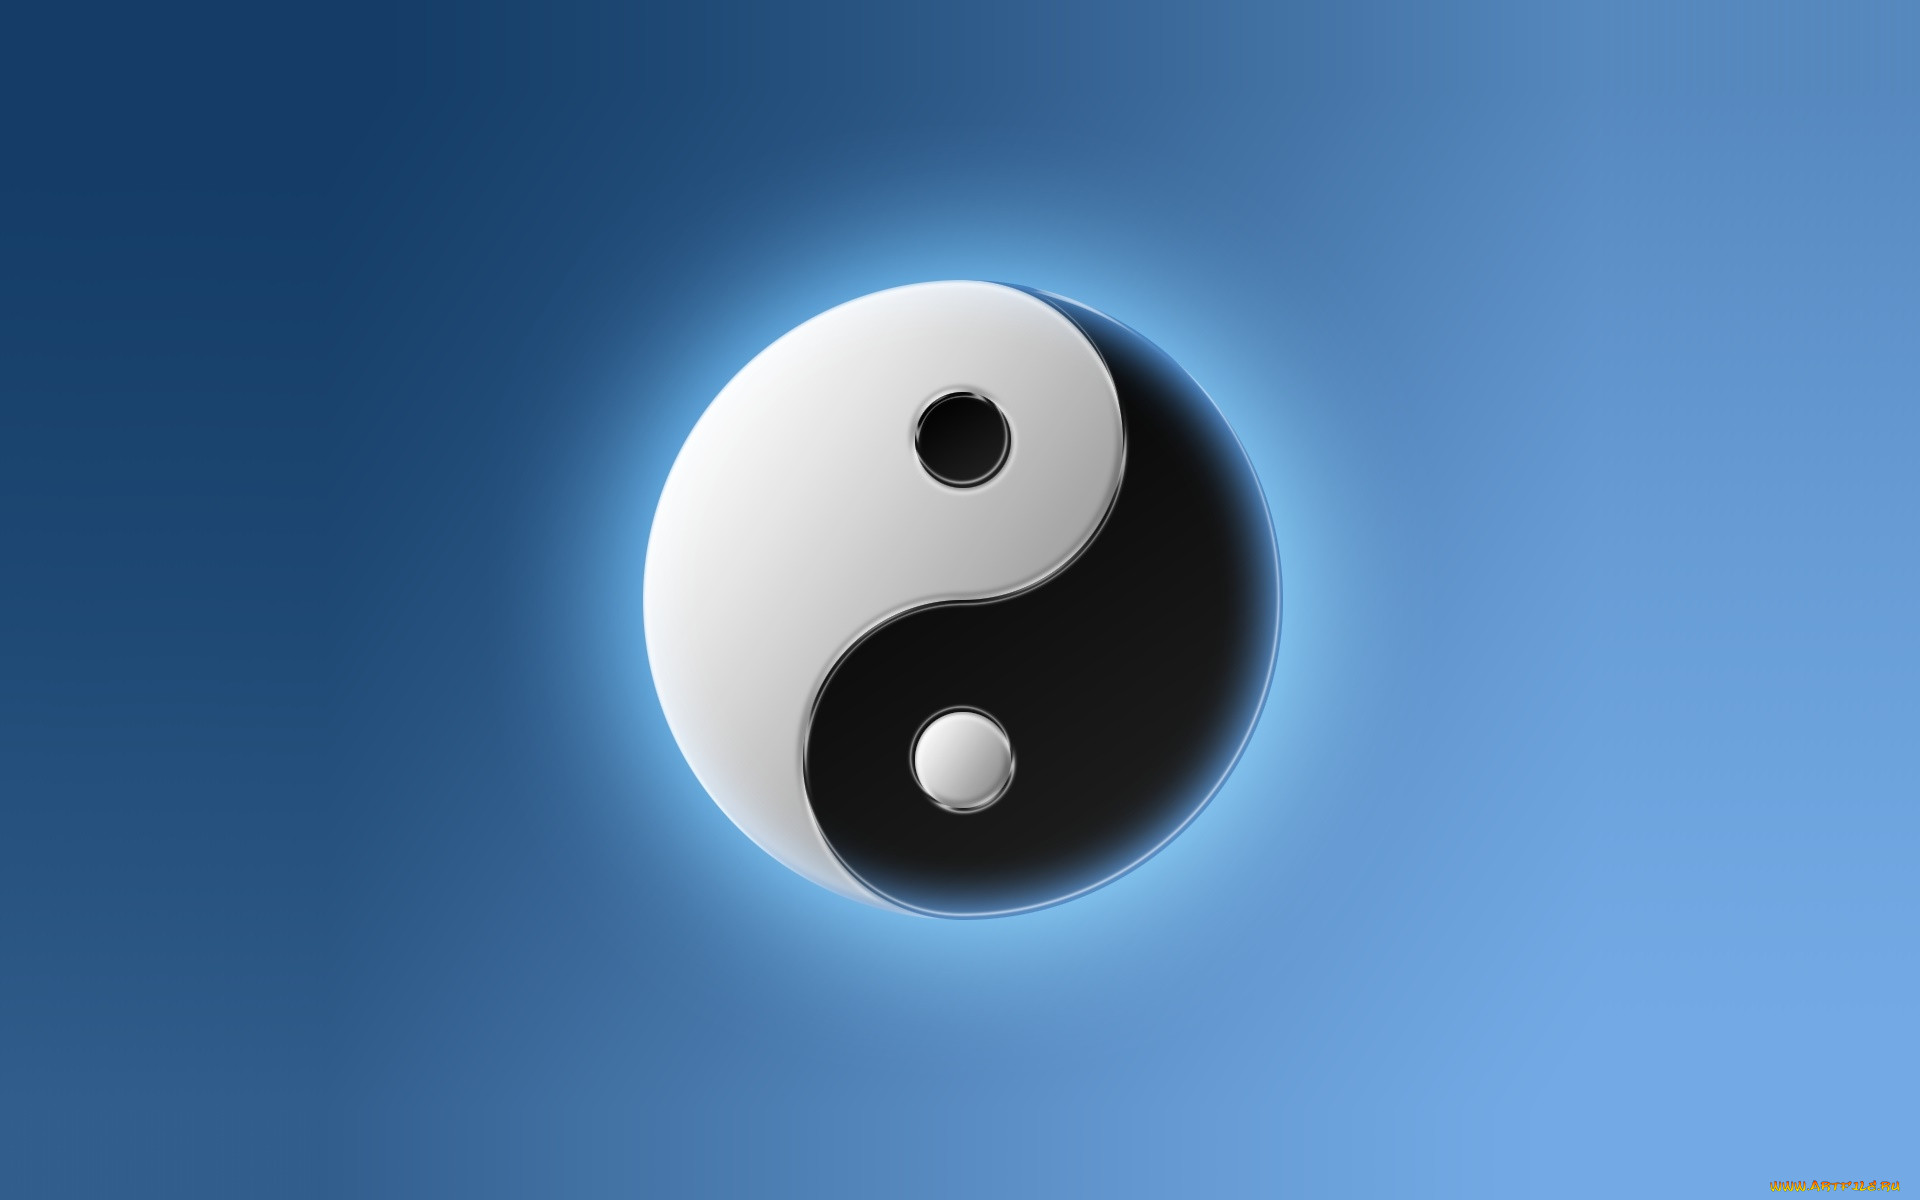 Обои 3Д Графика Инь-Янь (Yin Yang), обои для рабочего стола, фотографии 3д  графика, инь-Янь , yin yang, логотип, фон Обои для рабочего стола, скачать  обои картинки заставки на рабочий стол.